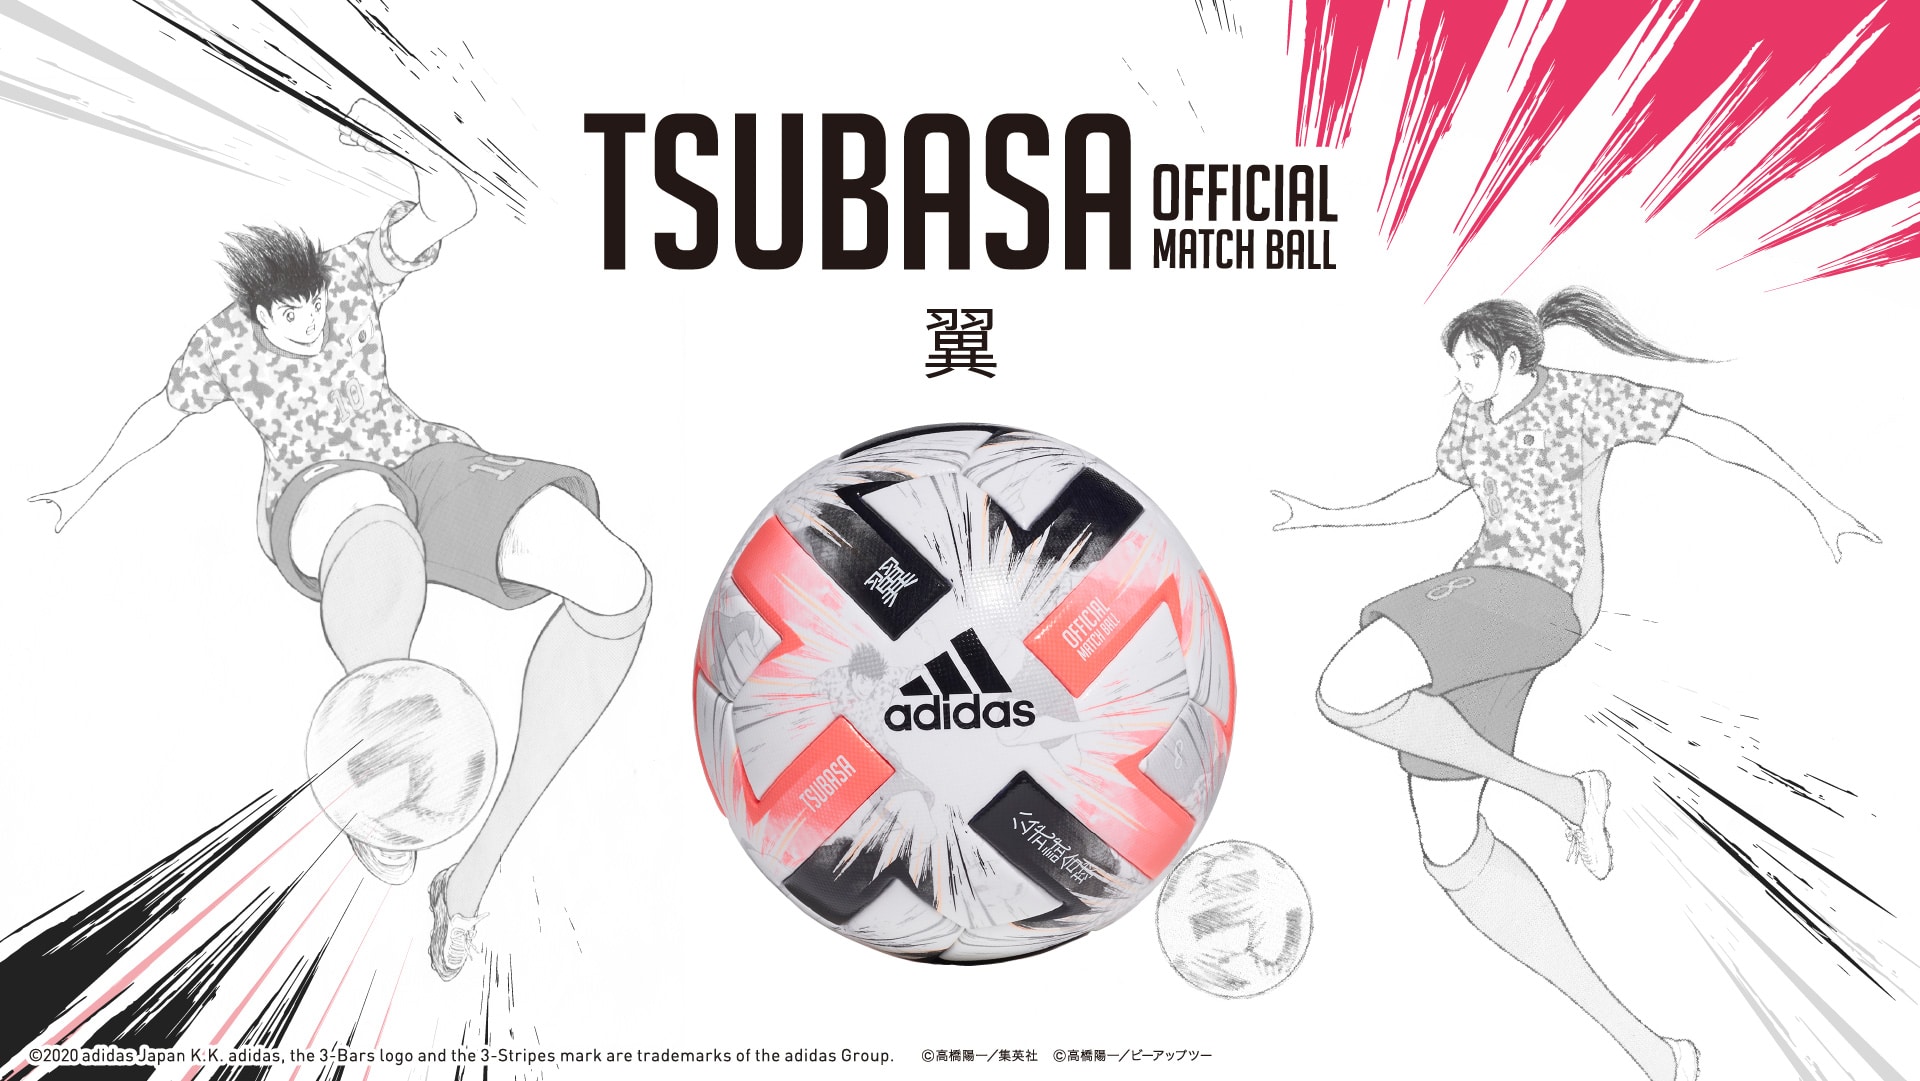 Tsubasa X キャプテン翼 スペシャルエディション Tsubasa Special Editon Adidas アディダス サッカー ショップkamo